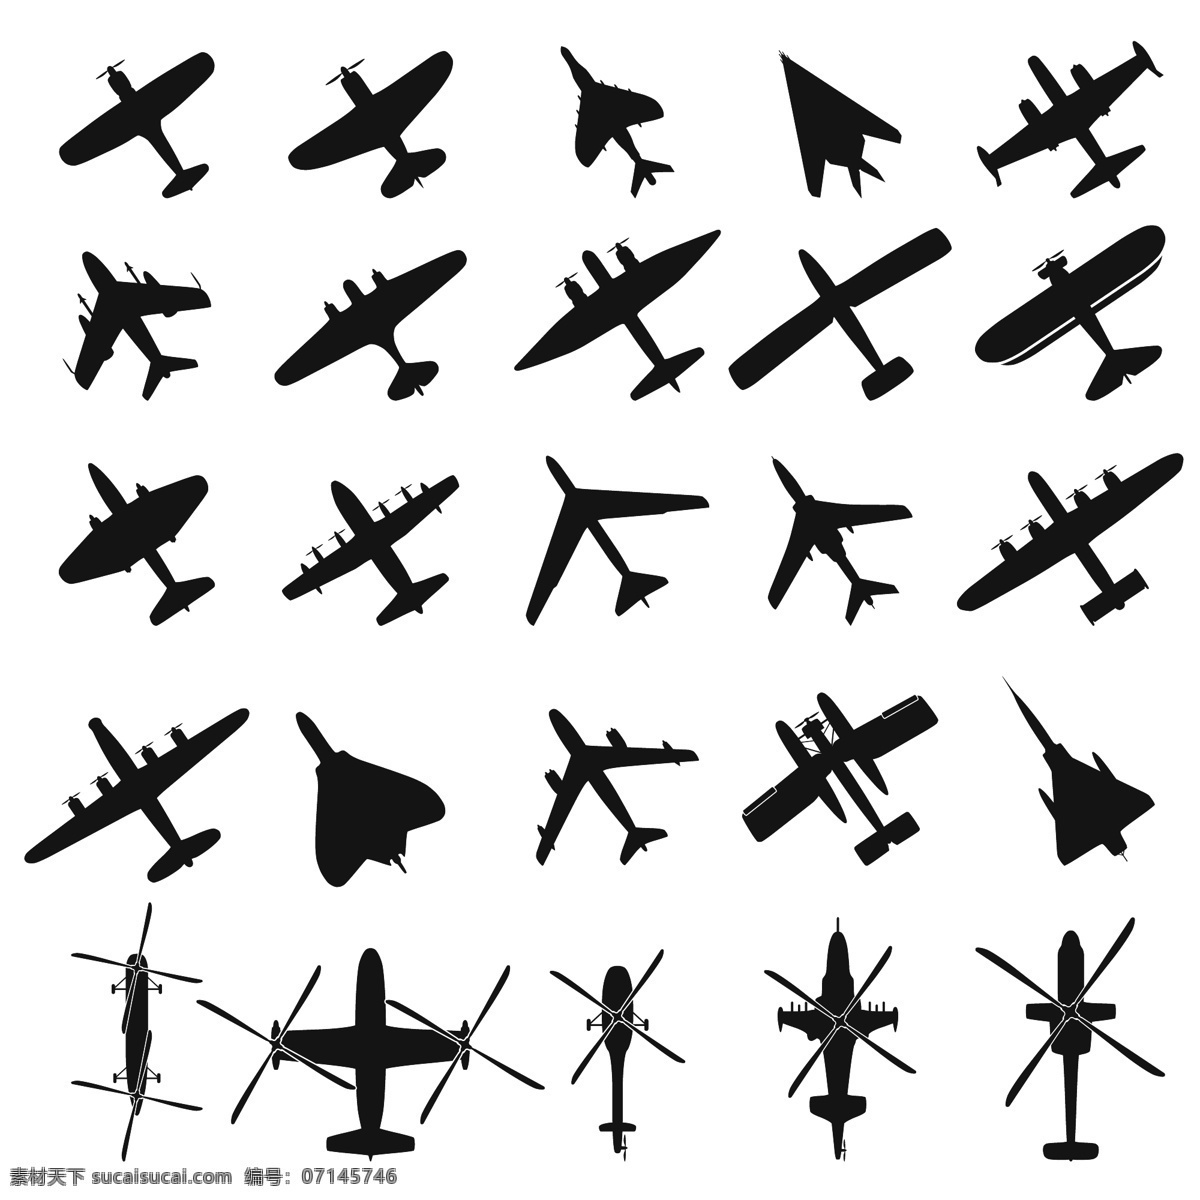 战斗机剪影 飞机剪影 运输机 客机 航空飞机 矢量飞机 交通工具 现代科技 矢量素材 白色